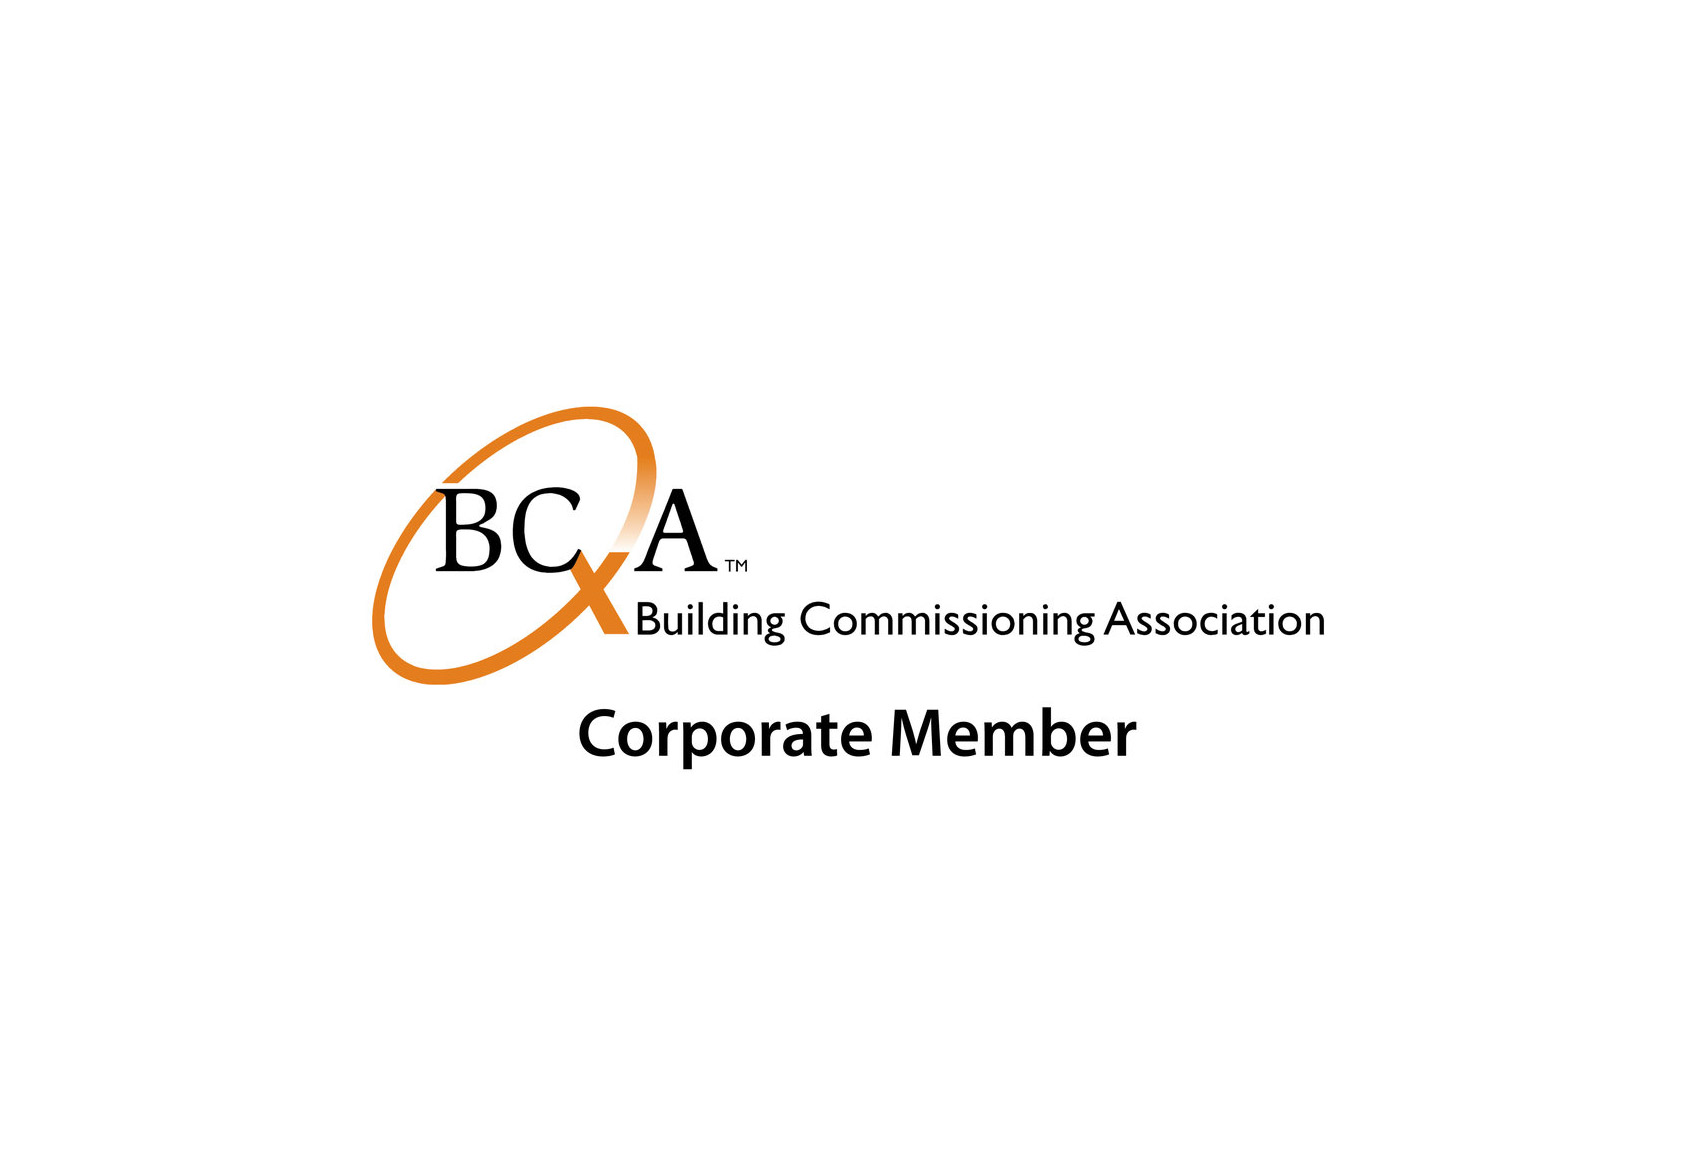 BCxA-Logo-Resized.jpg